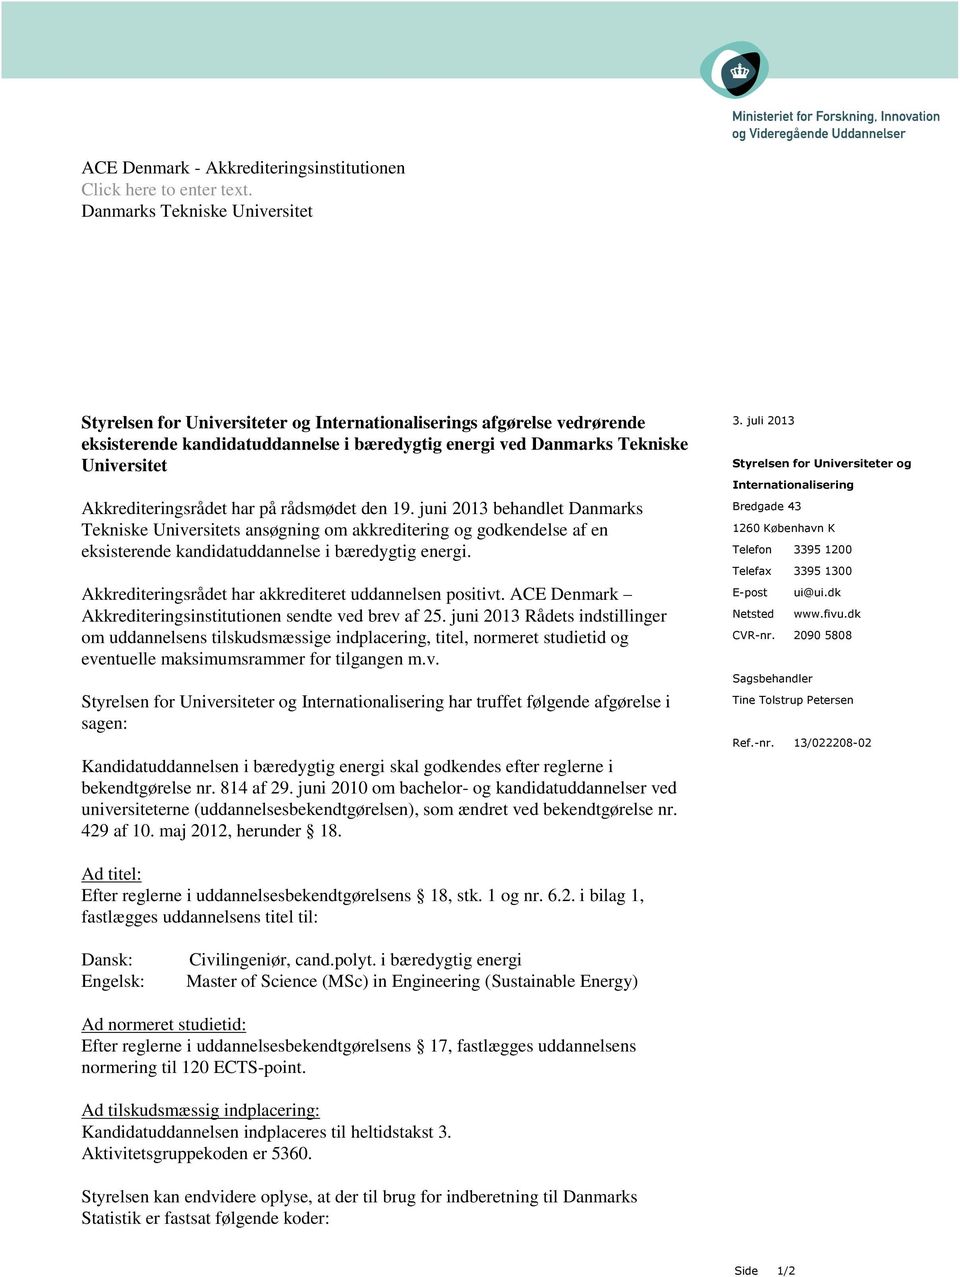 Akkrediteringsrådet har på rådsmødet den 19. juni 2013 behandlet Danmarks Tekniske Universitets ansøgning om akkreditering og godkendelse af en eksisterende kandidatuddannelse i bæredygtig energi.